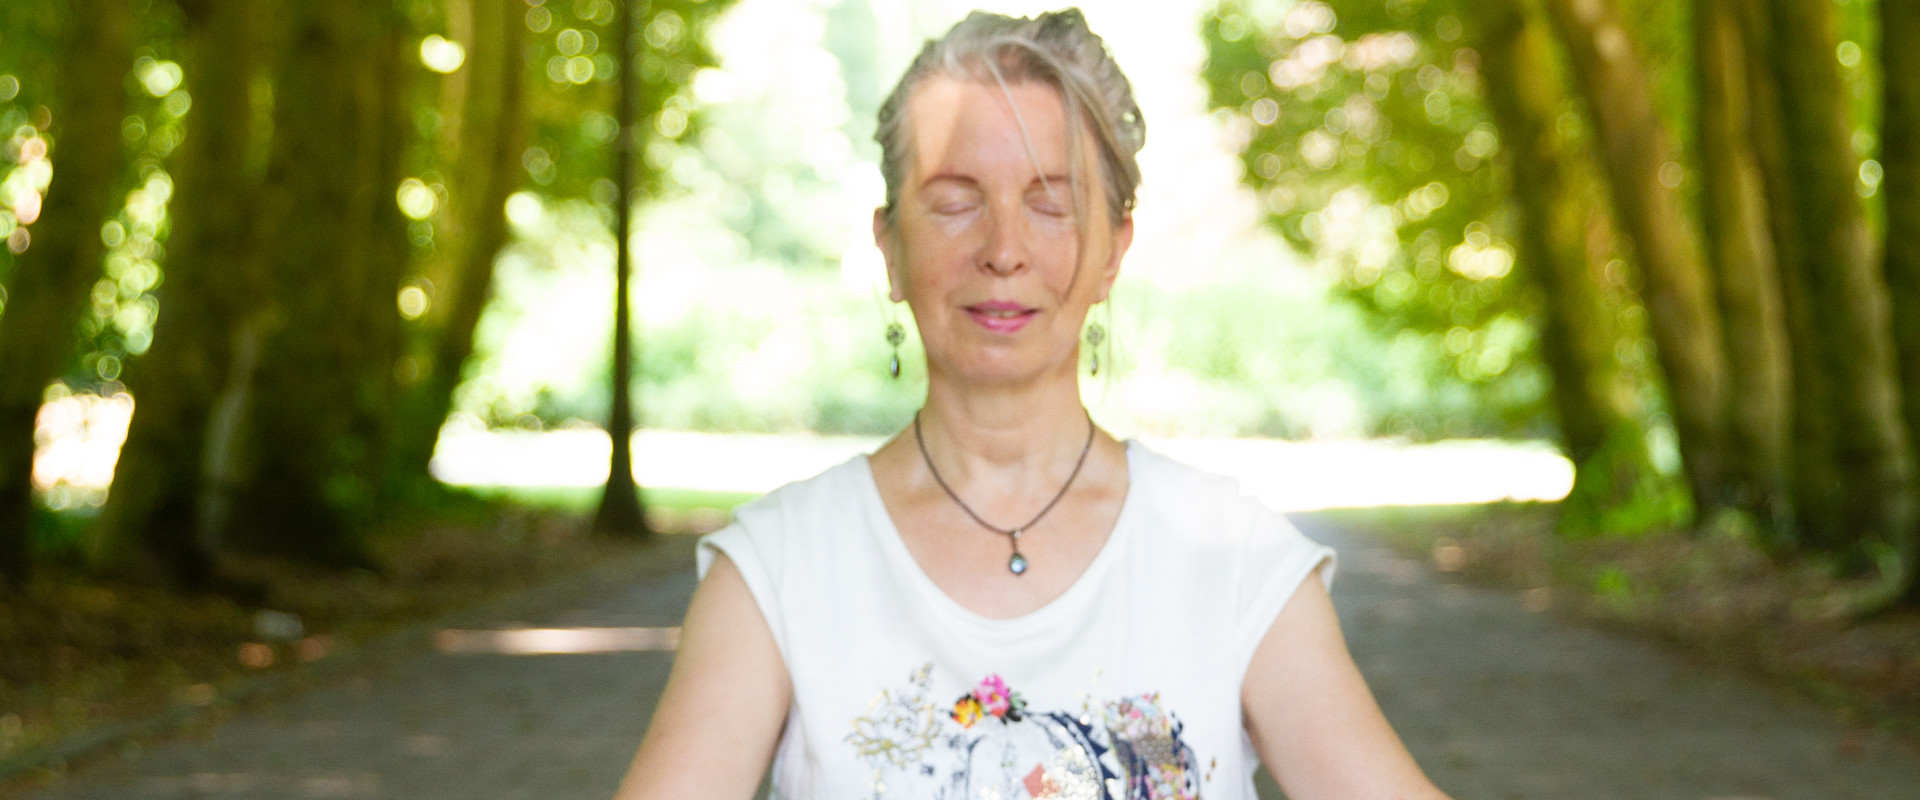 Yogi Teresa Brefeld vertelt over haar Kundalini Yoga ervaringen